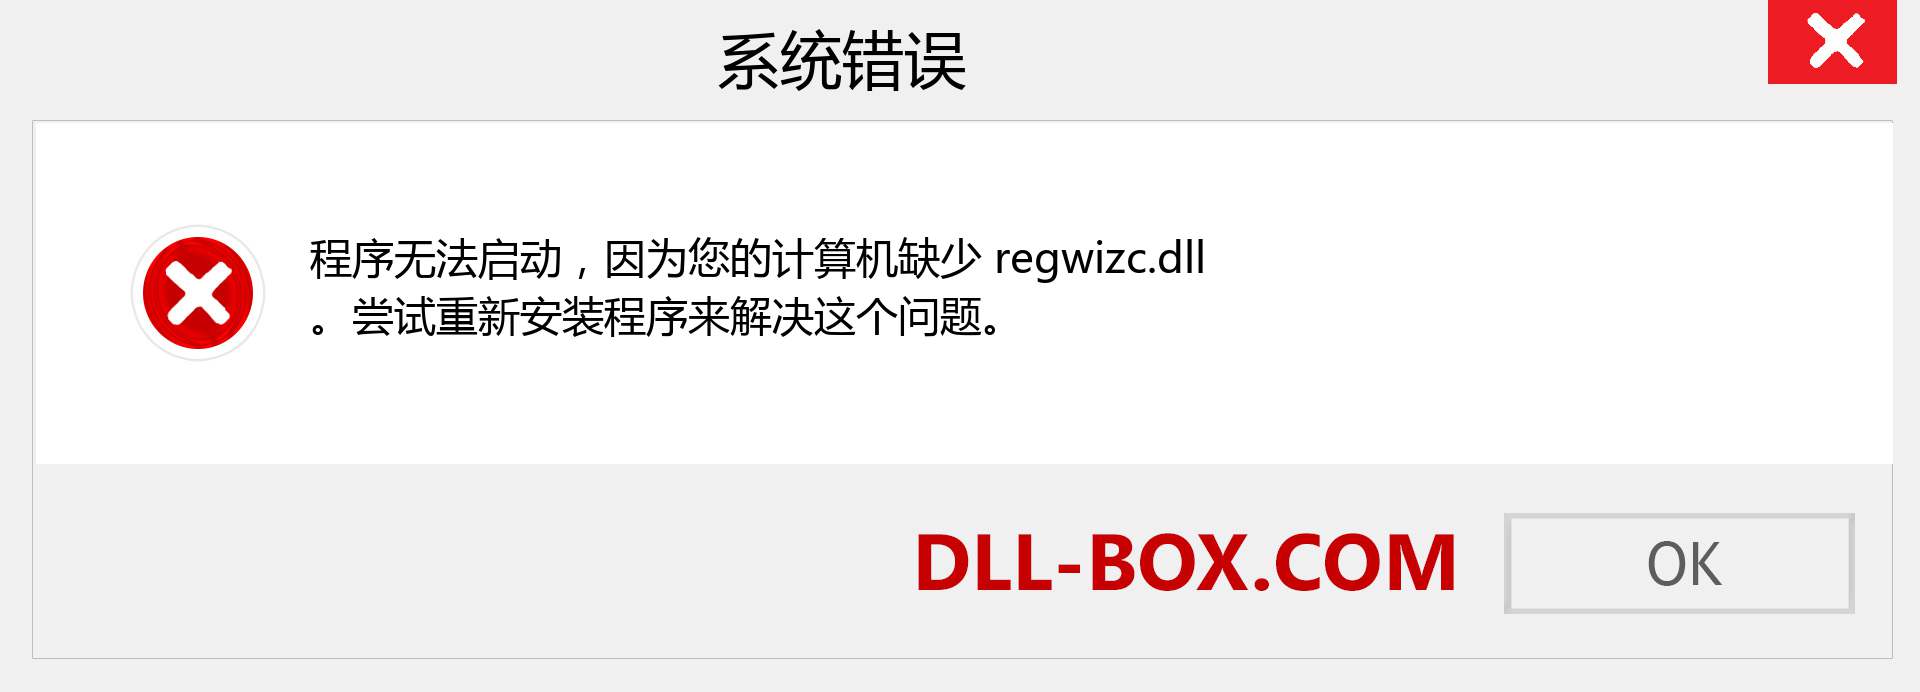 regwizc.dll 文件丢失？。 适用于 Windows 7、8、10 的下载 - 修复 Windows、照片、图像上的 regwizc dll 丢失错误